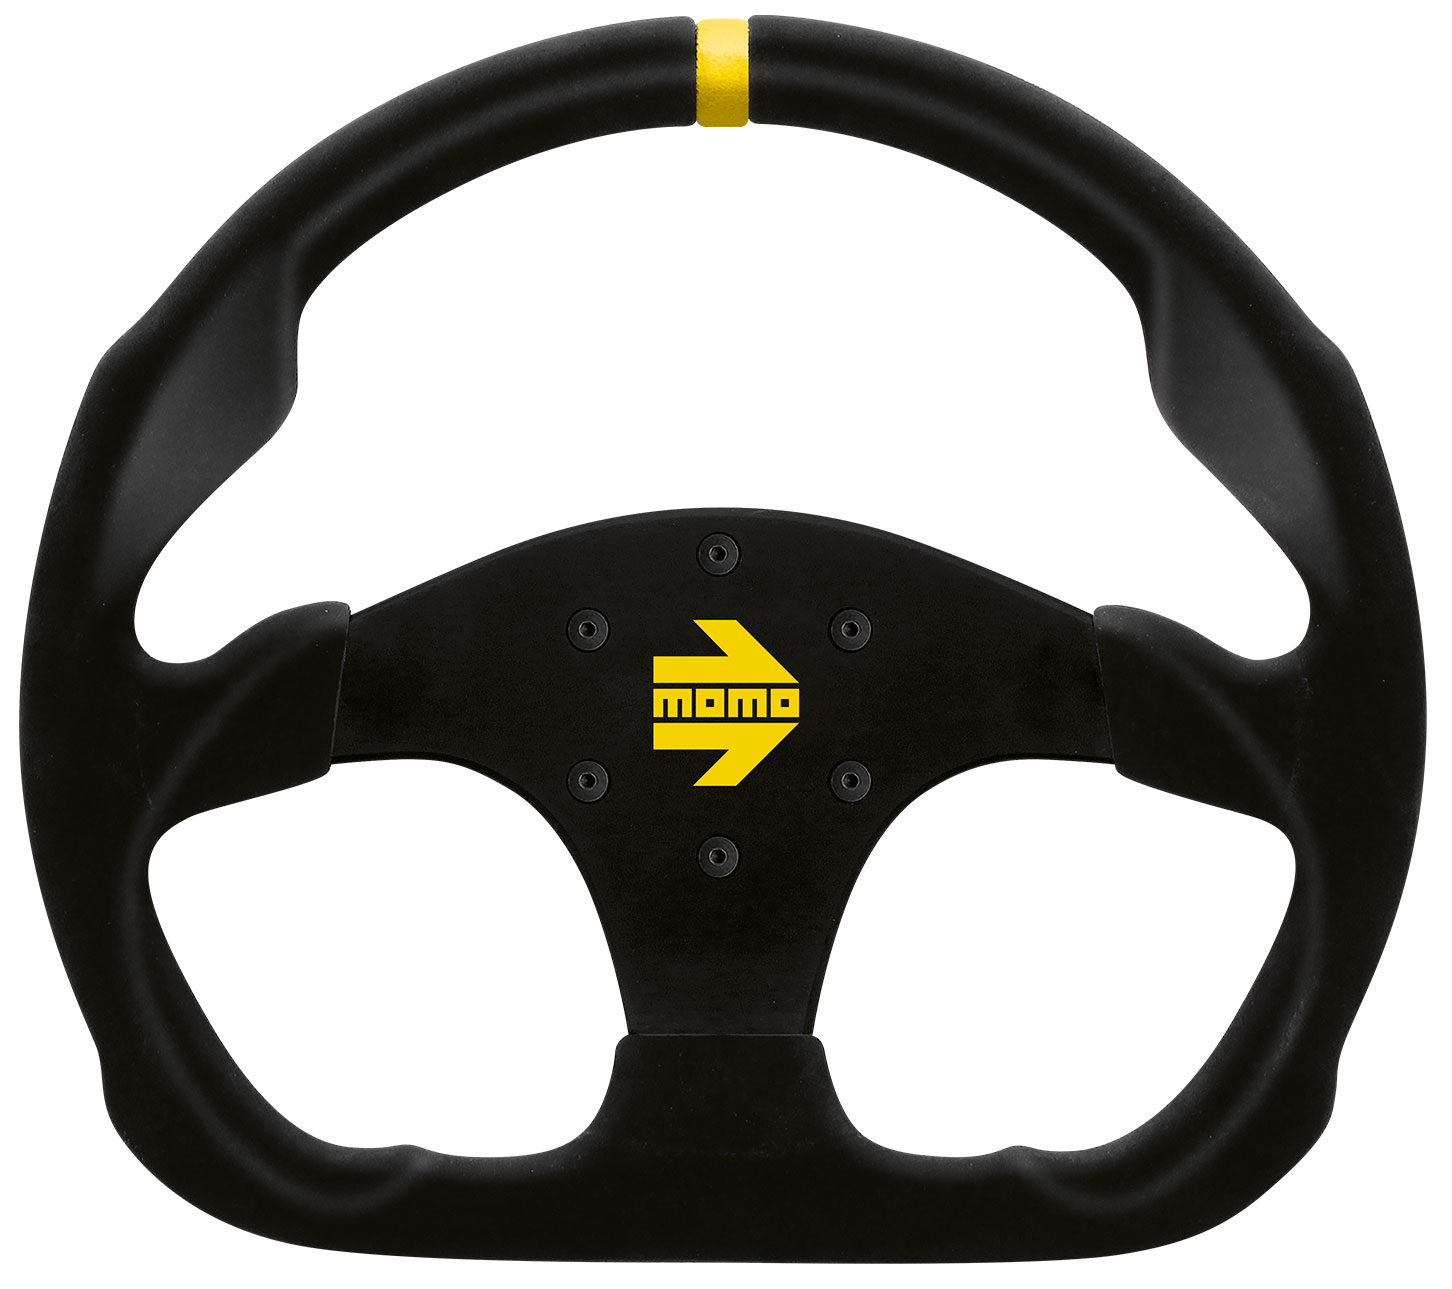 Руль мом рейсинг. Руль МОМО ралли. Спортивный руль Momo. Руль Momo Racing для машины. Руль Atomic Accessories TVR Sport Racing EVO Steering Wheel.